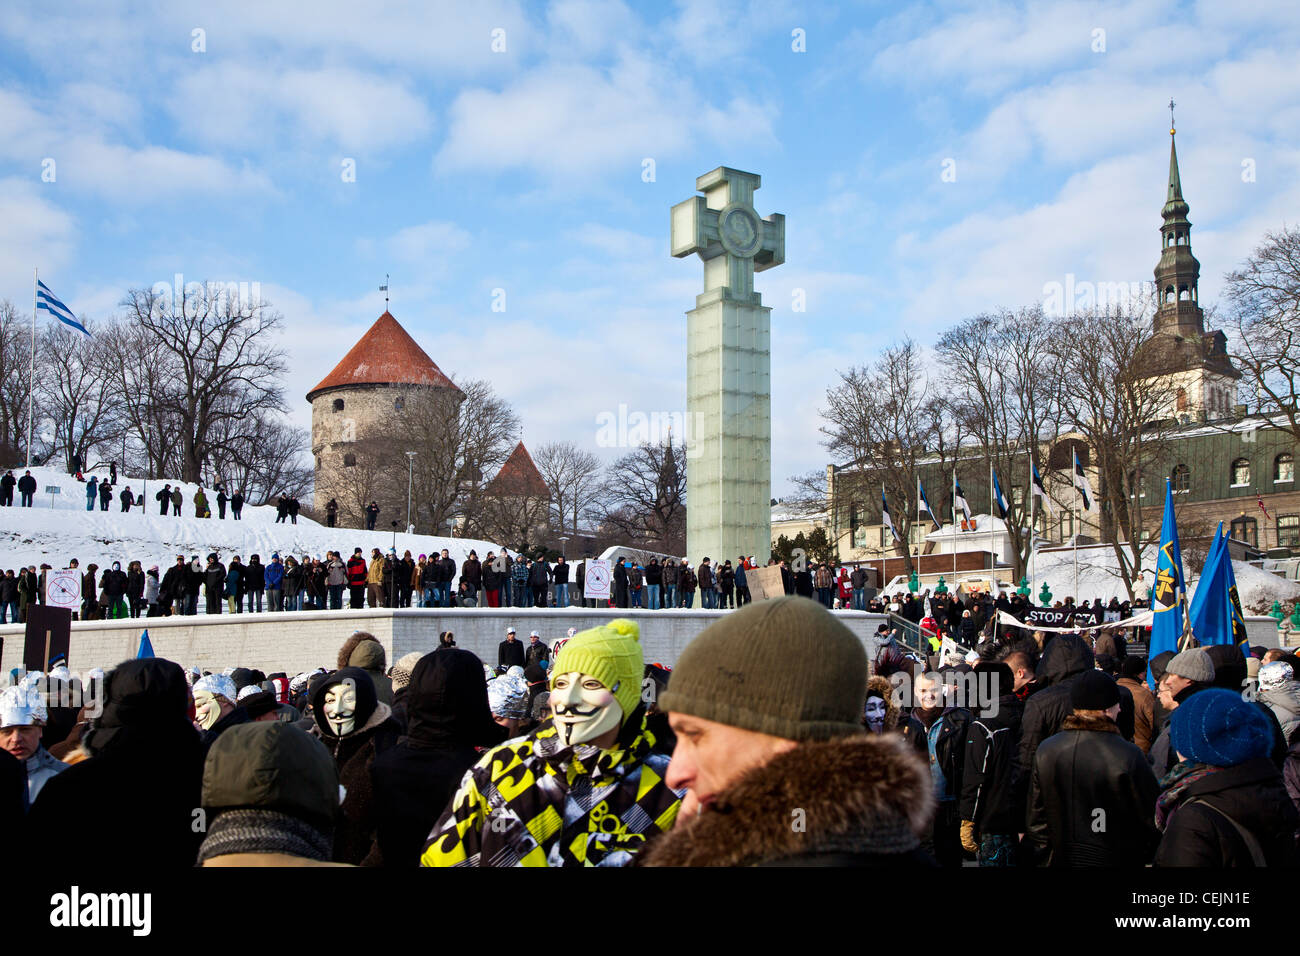 Protesters against ACTA gathered in Vabaduse Väljak, Tallinn, Estonia Stock Photo